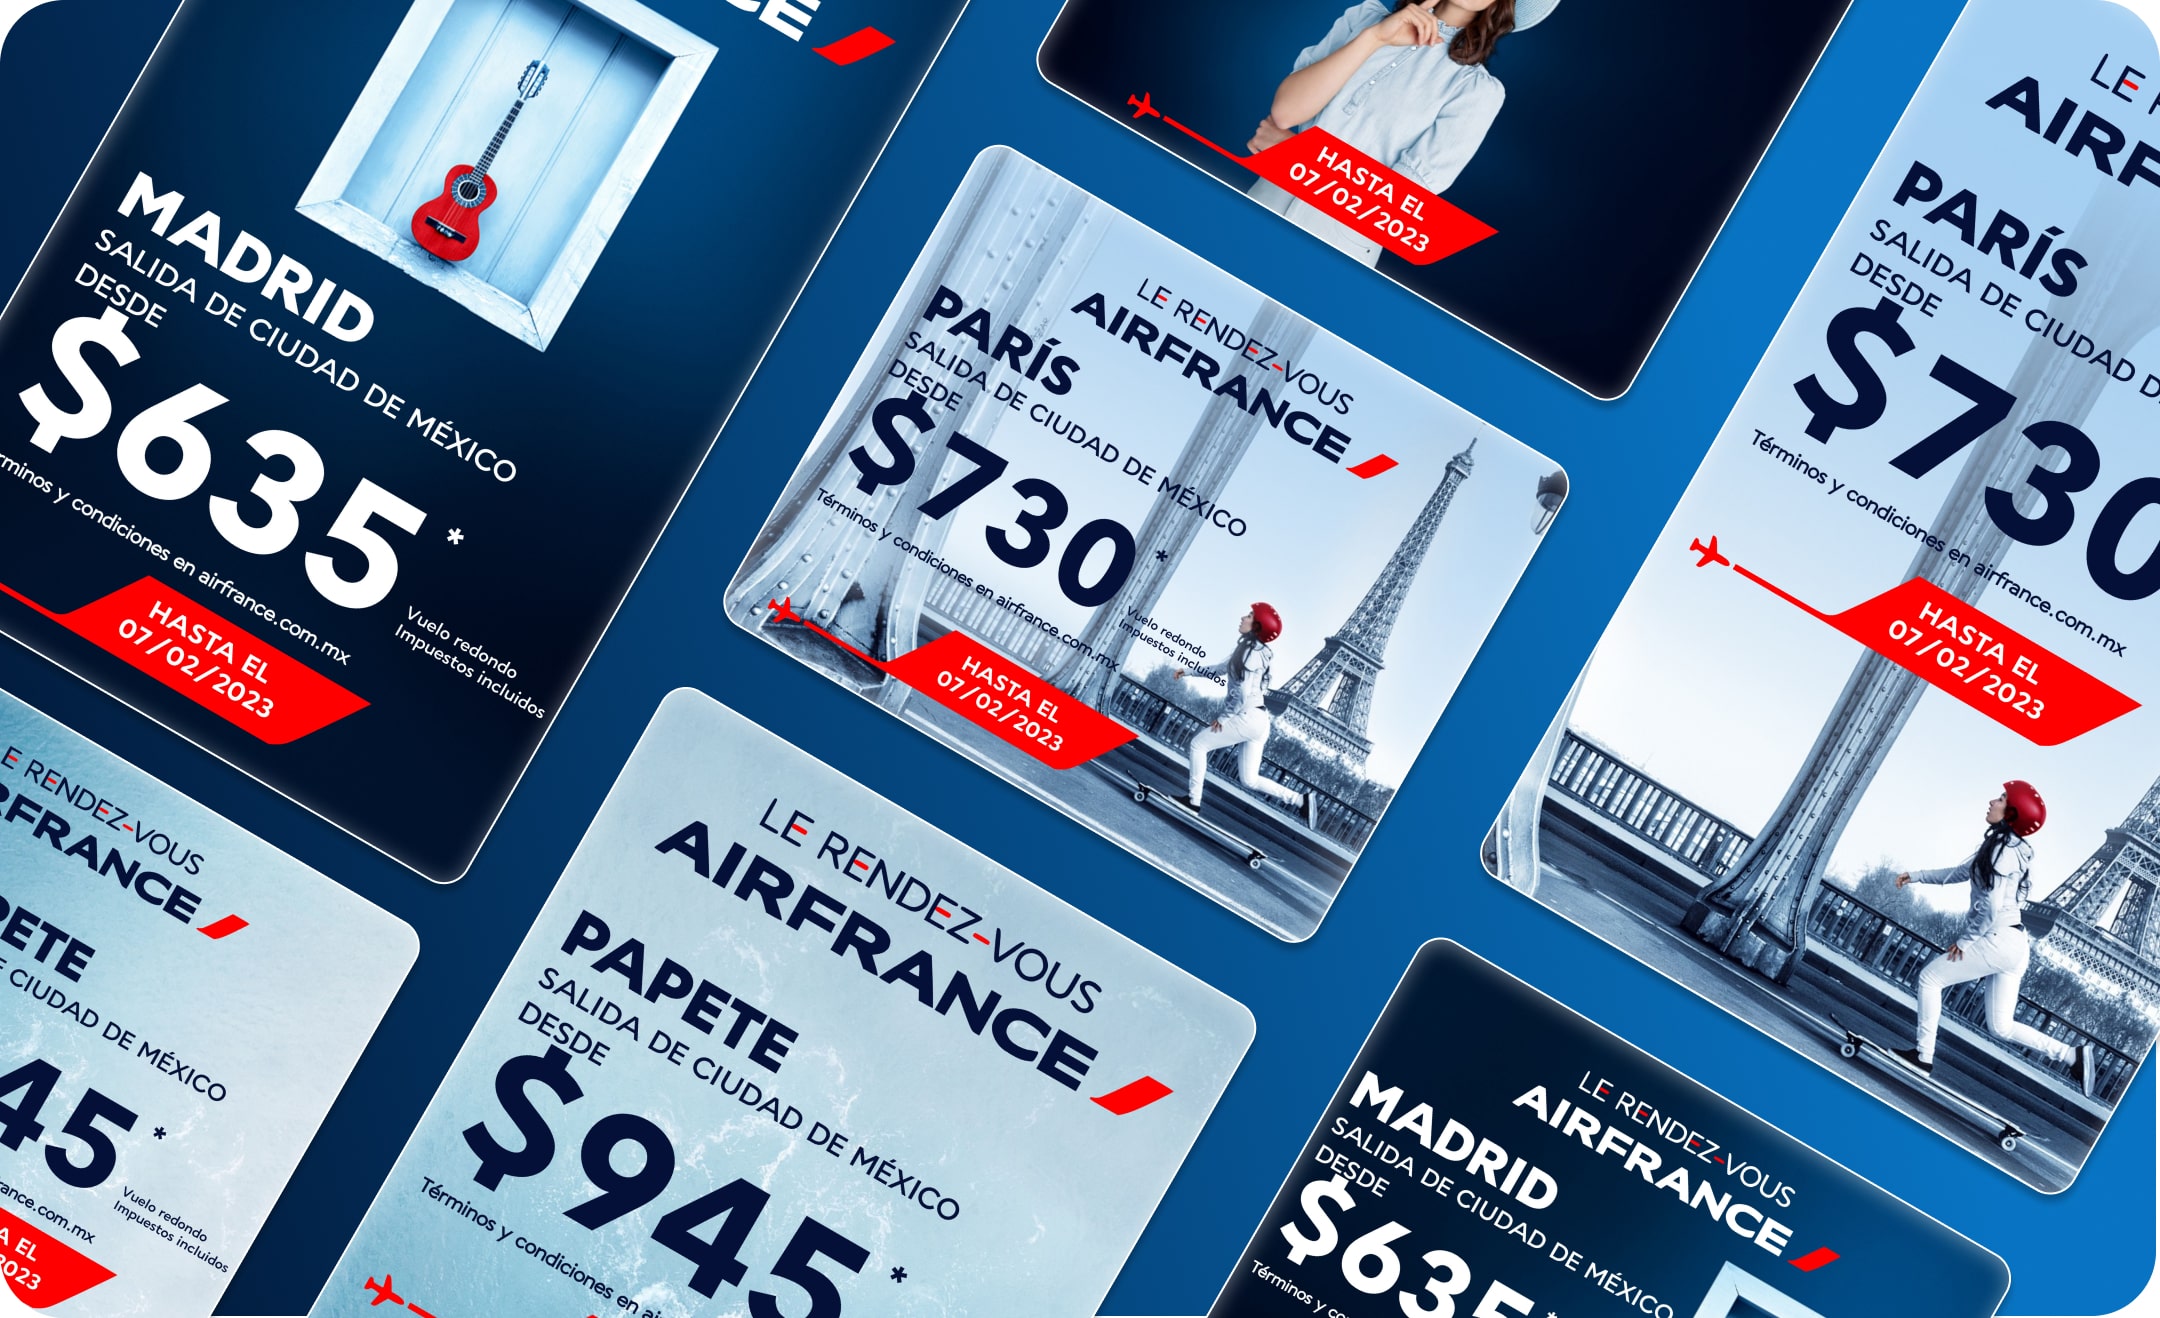 Air France banners showcase